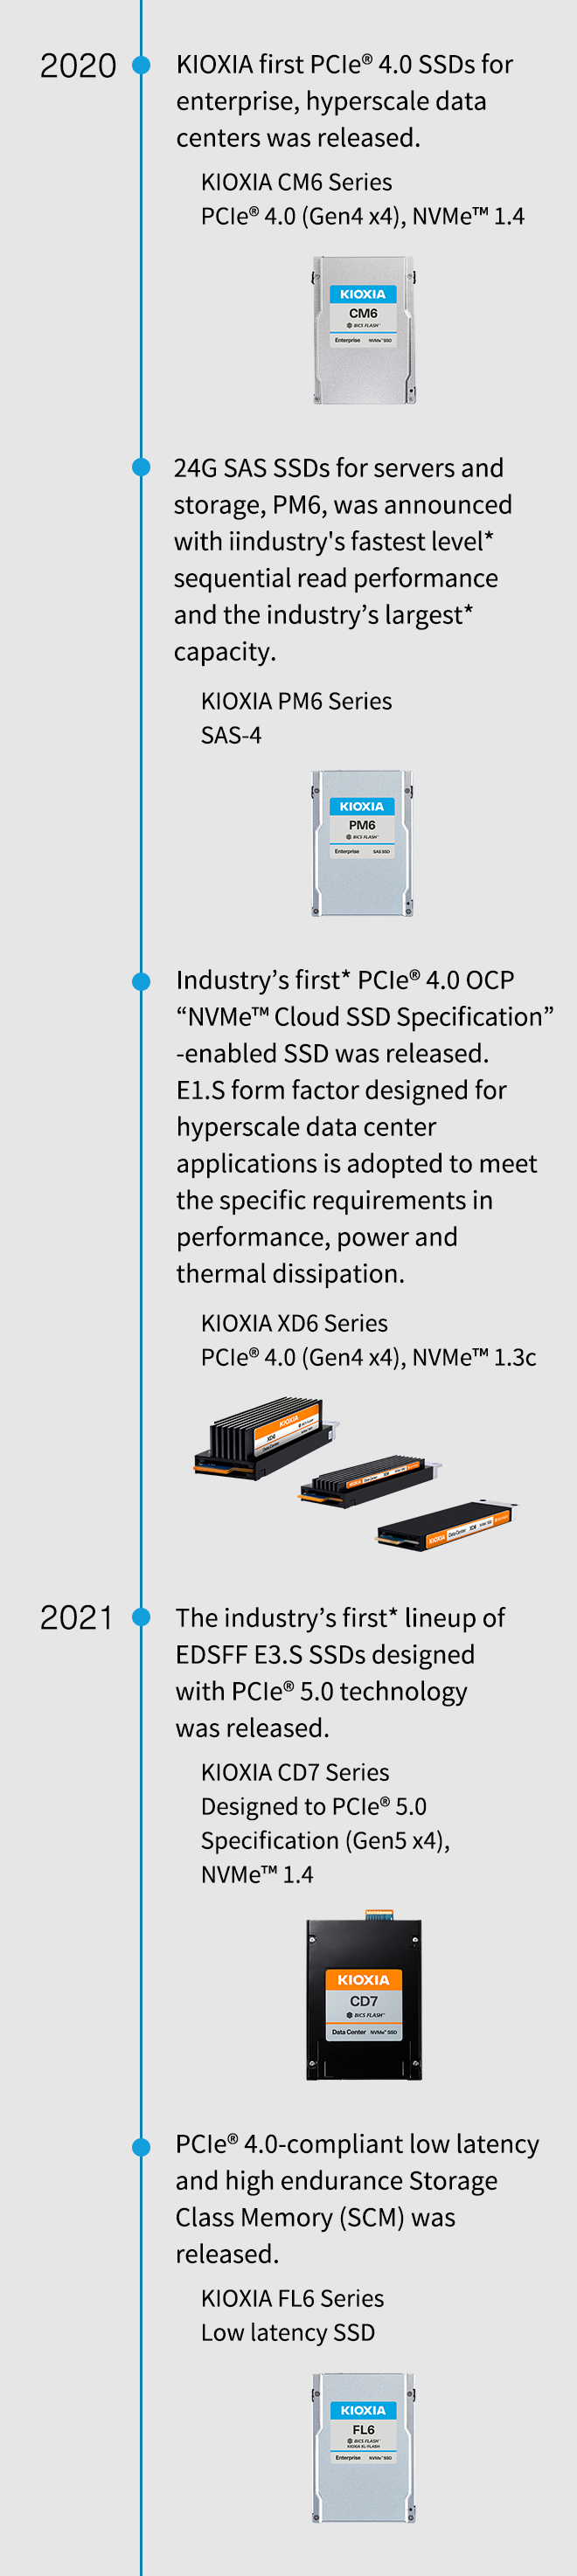 2020 r. Wprowadzono pierwsze dyski SSD KIOXIA PCIe® 4.0 dla przedsiębiorstw i hiperskalowych centrów danych. KIOXIA seria CM6 PCIe® 4.0 (Gen4 x4), NVMe™ 1.4. Zapowiedziano dyski SSD 24G SAS do serwerów i pamięci masowej serii PM6 z najwyższą w branży* wydajnością odczytu sekwencyjnego i największą w branży* pojemnością. KIOXIA seria PM6 SAS-4. Wprowadzono pierwszy w branży* dysk SSD PCIe® 4.0 OCP z obsługą „NVMe™ Cloud SSD Specification”. Typ obudowy E1.S zaprojektowano do zastosowań w hiperskalowych centrach przetwarzania danych spełnia specyficzne wymagania w zakresie wydajności, mocy i rozpraszania ciepła. KIOXIA seria XD6 PCIe® 4.0 (Gen4 x4), NVMe™ 1.3c. 2021 r. Wprowadzono pierwszą w branży* linię dysków SSD EDSFF E3.S zaprojektowanych z wykorzystaniem technologii PCIe® 5.0. KIOXIA seria CD7 zaprojektowana zgodnie ze specyfikacją PCIe® 5.0 (Gen5 x4), NVMe™ 1.4. Wprowadzono pamięć klasy pamięci masowej (SCM) zgodną z PCIe® 4.0, o małych opóźnieniach i wysokiej wytrzymałości. Dyski SSD KIOXIA seria FL6 o niskim opóźnieniu